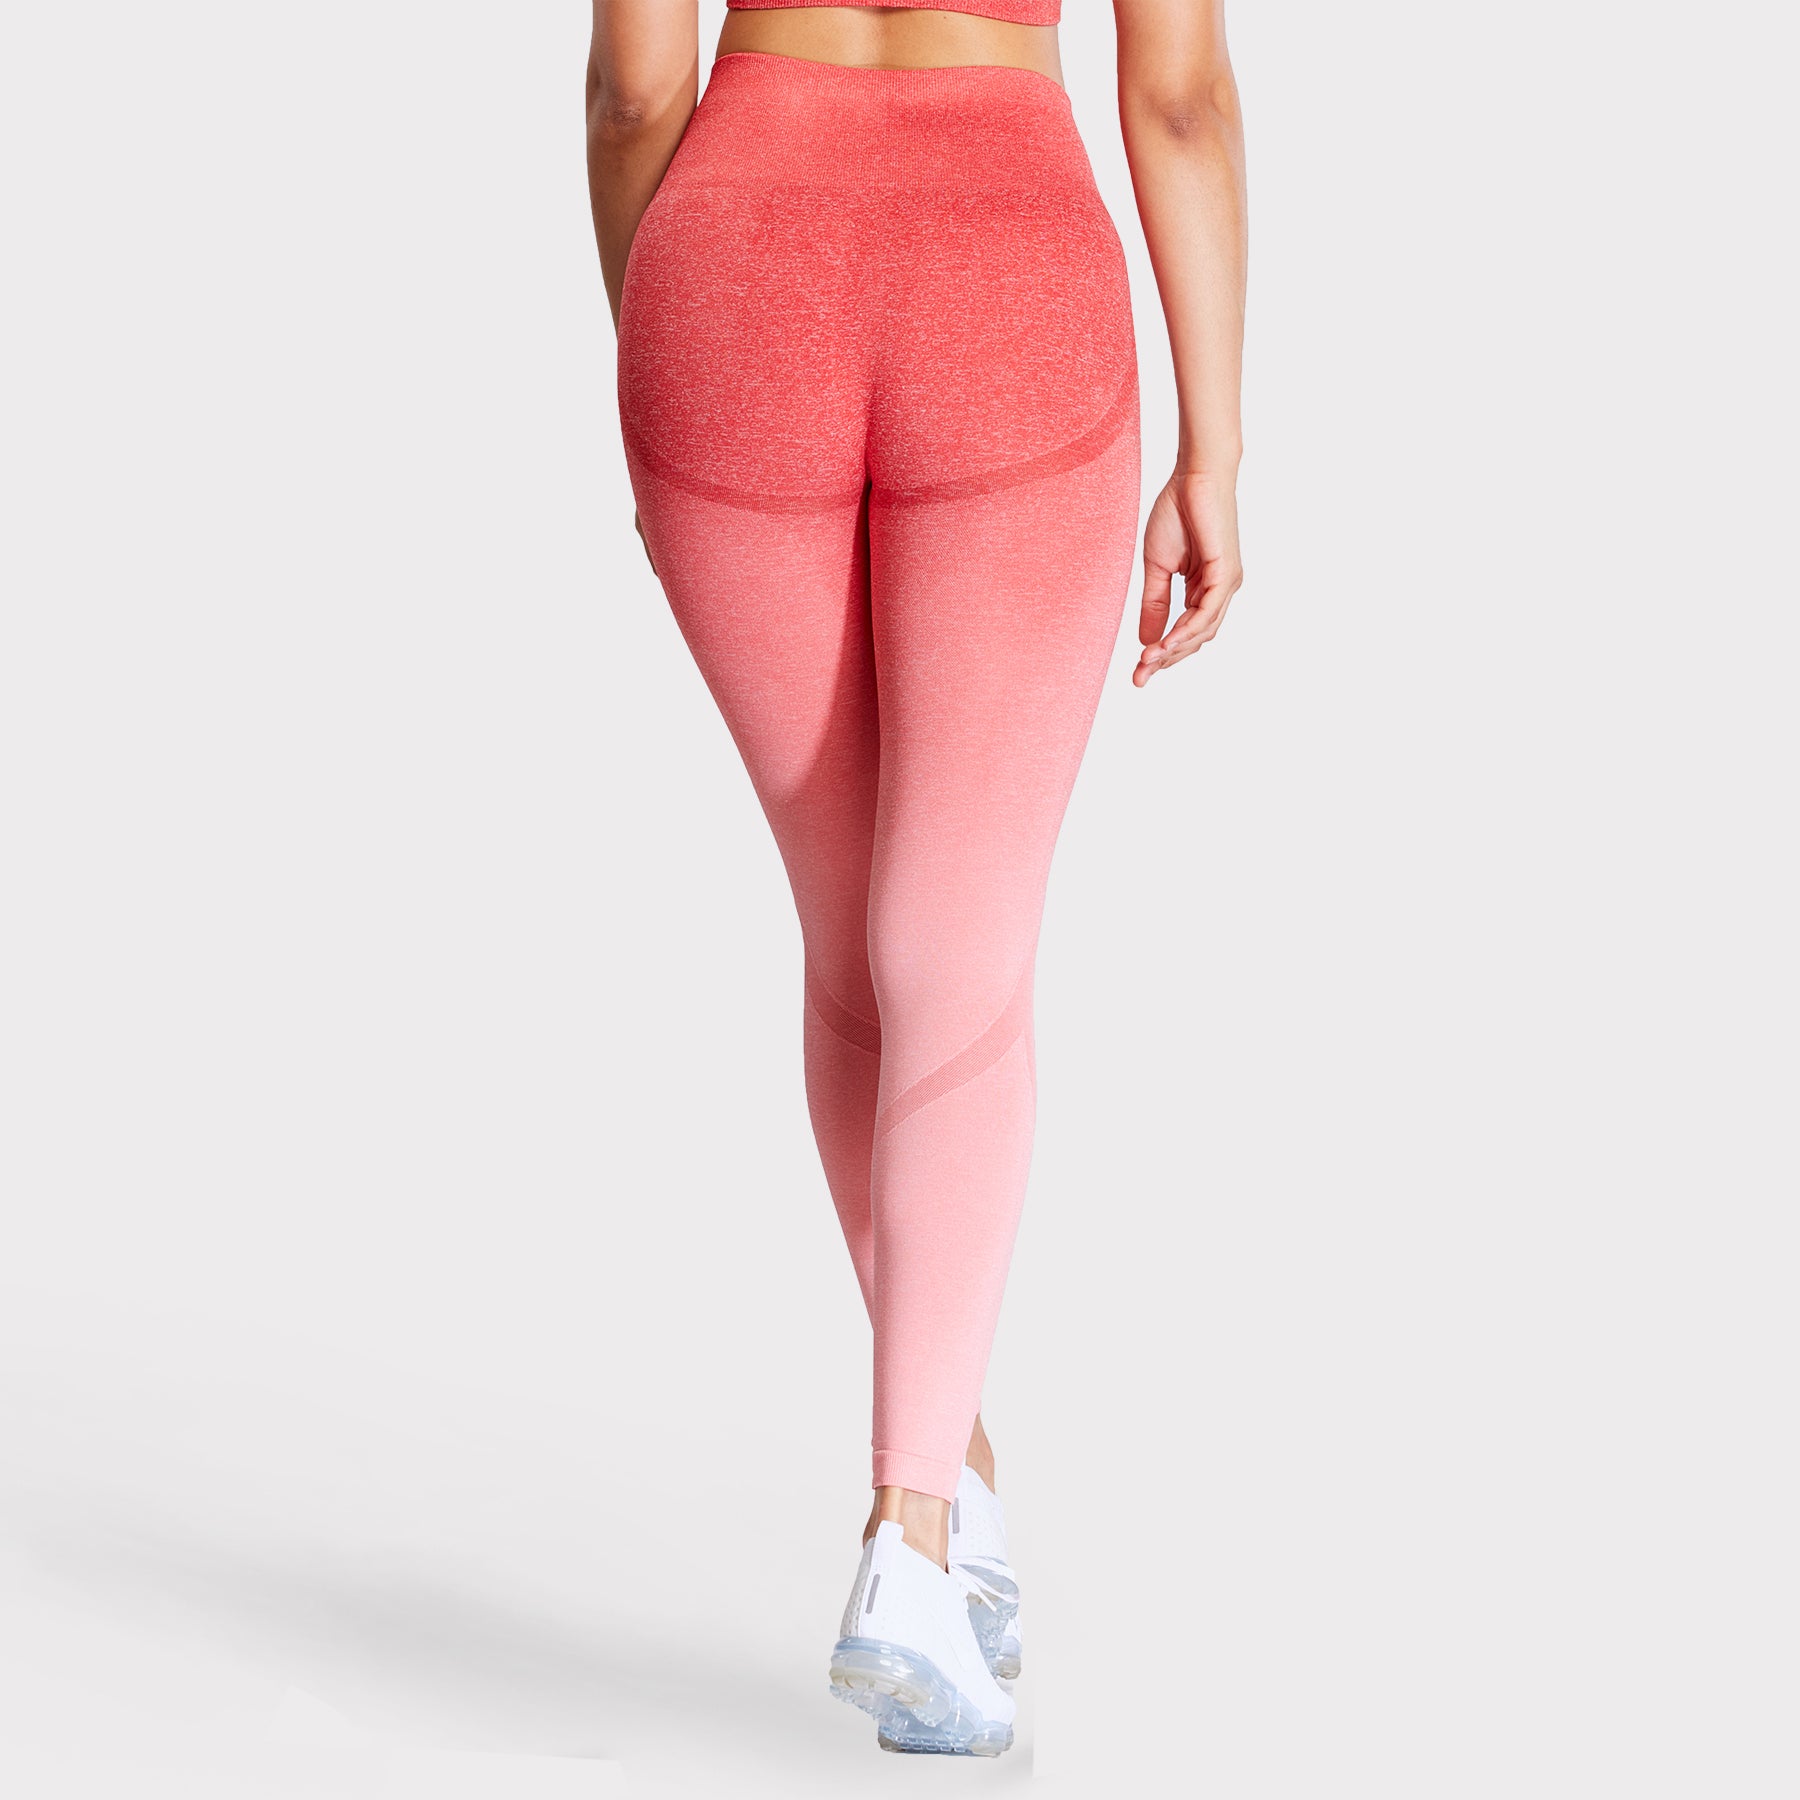 Tek Gear Leggings & Tank Pink Ombré Womens Size Large Athletic Activewear -  General Maintenance & Diagnostics Ltd